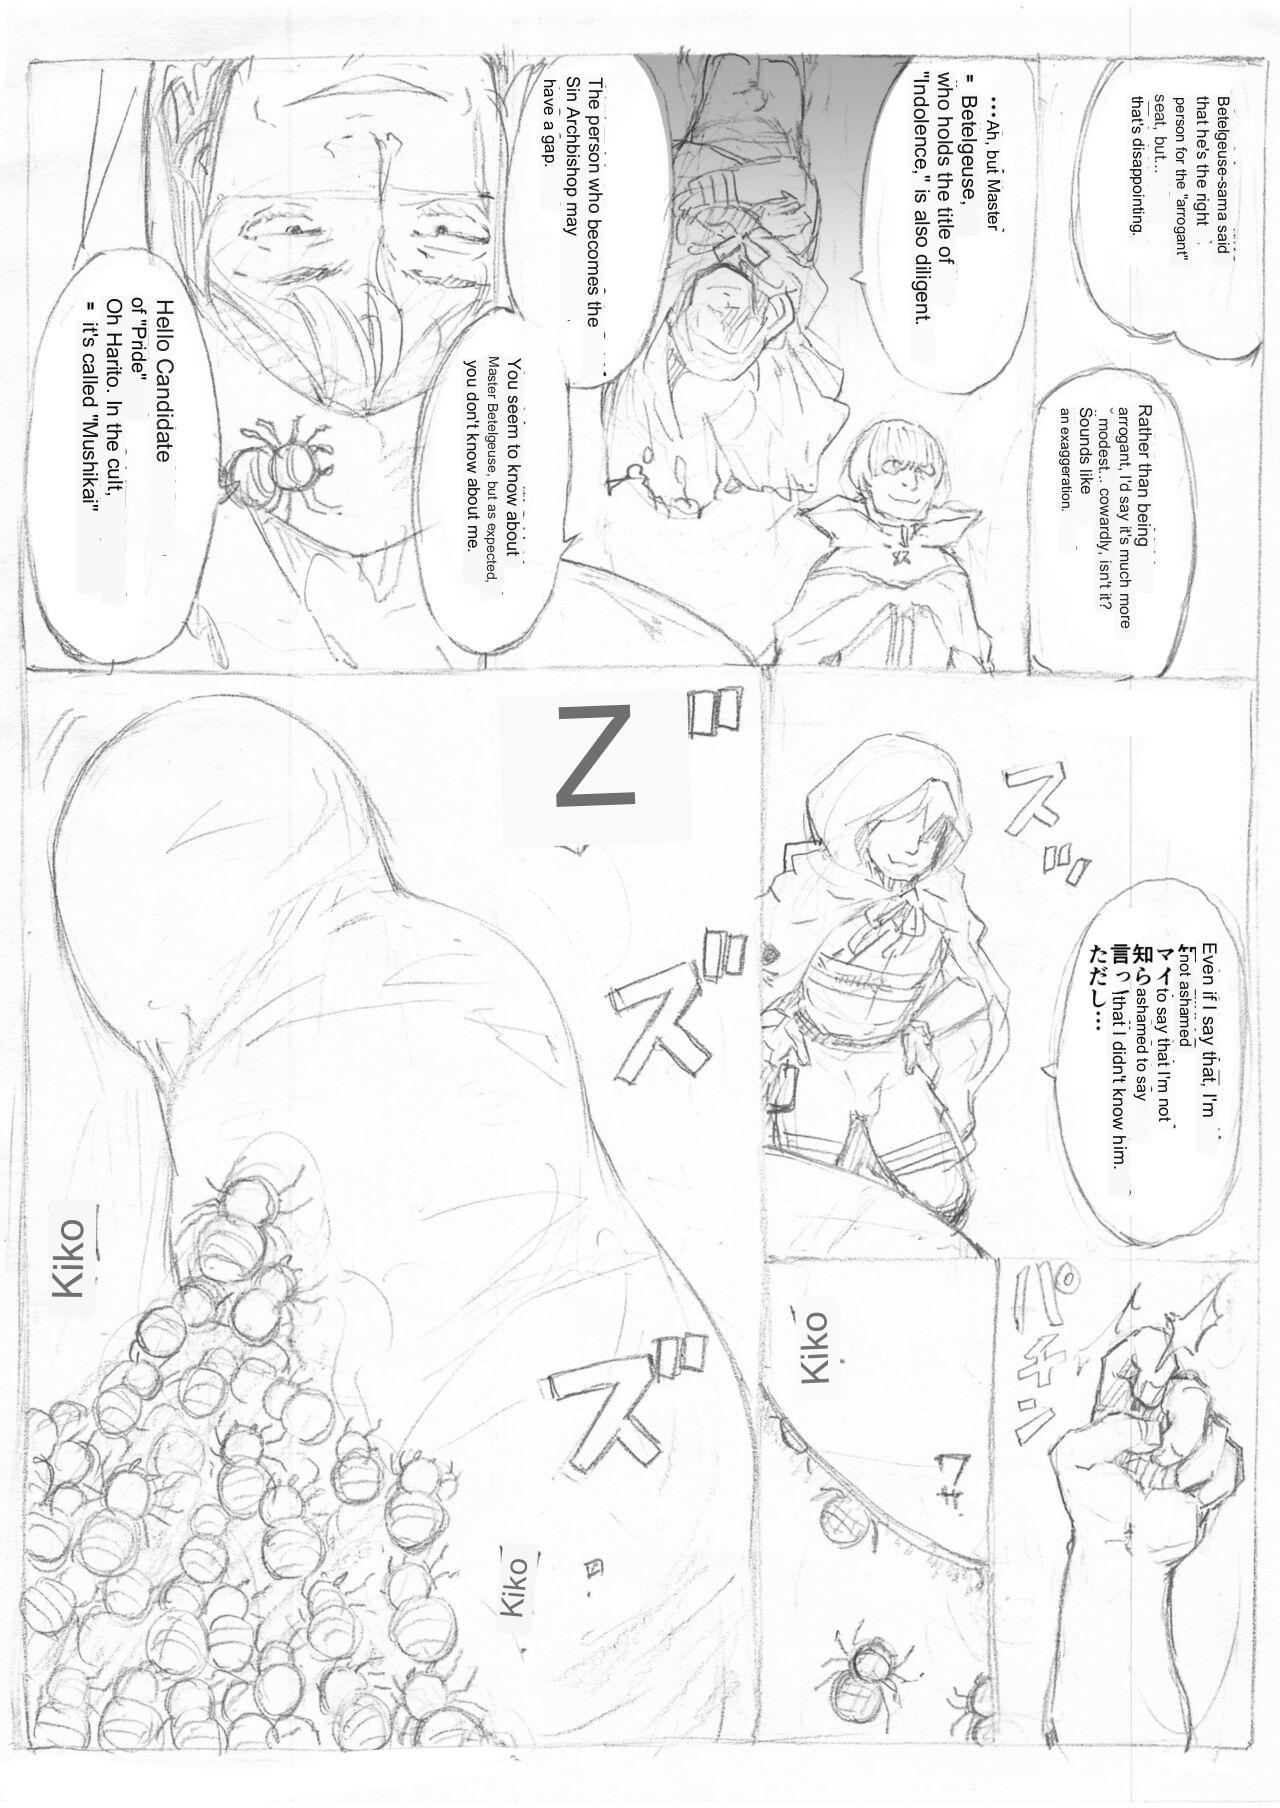 [Fujiwara Shunichi] Emilia Kumo Ito Kousoku Manga (Re: Zero kara Hajimeru Isekai Seikatsu) google translate 10